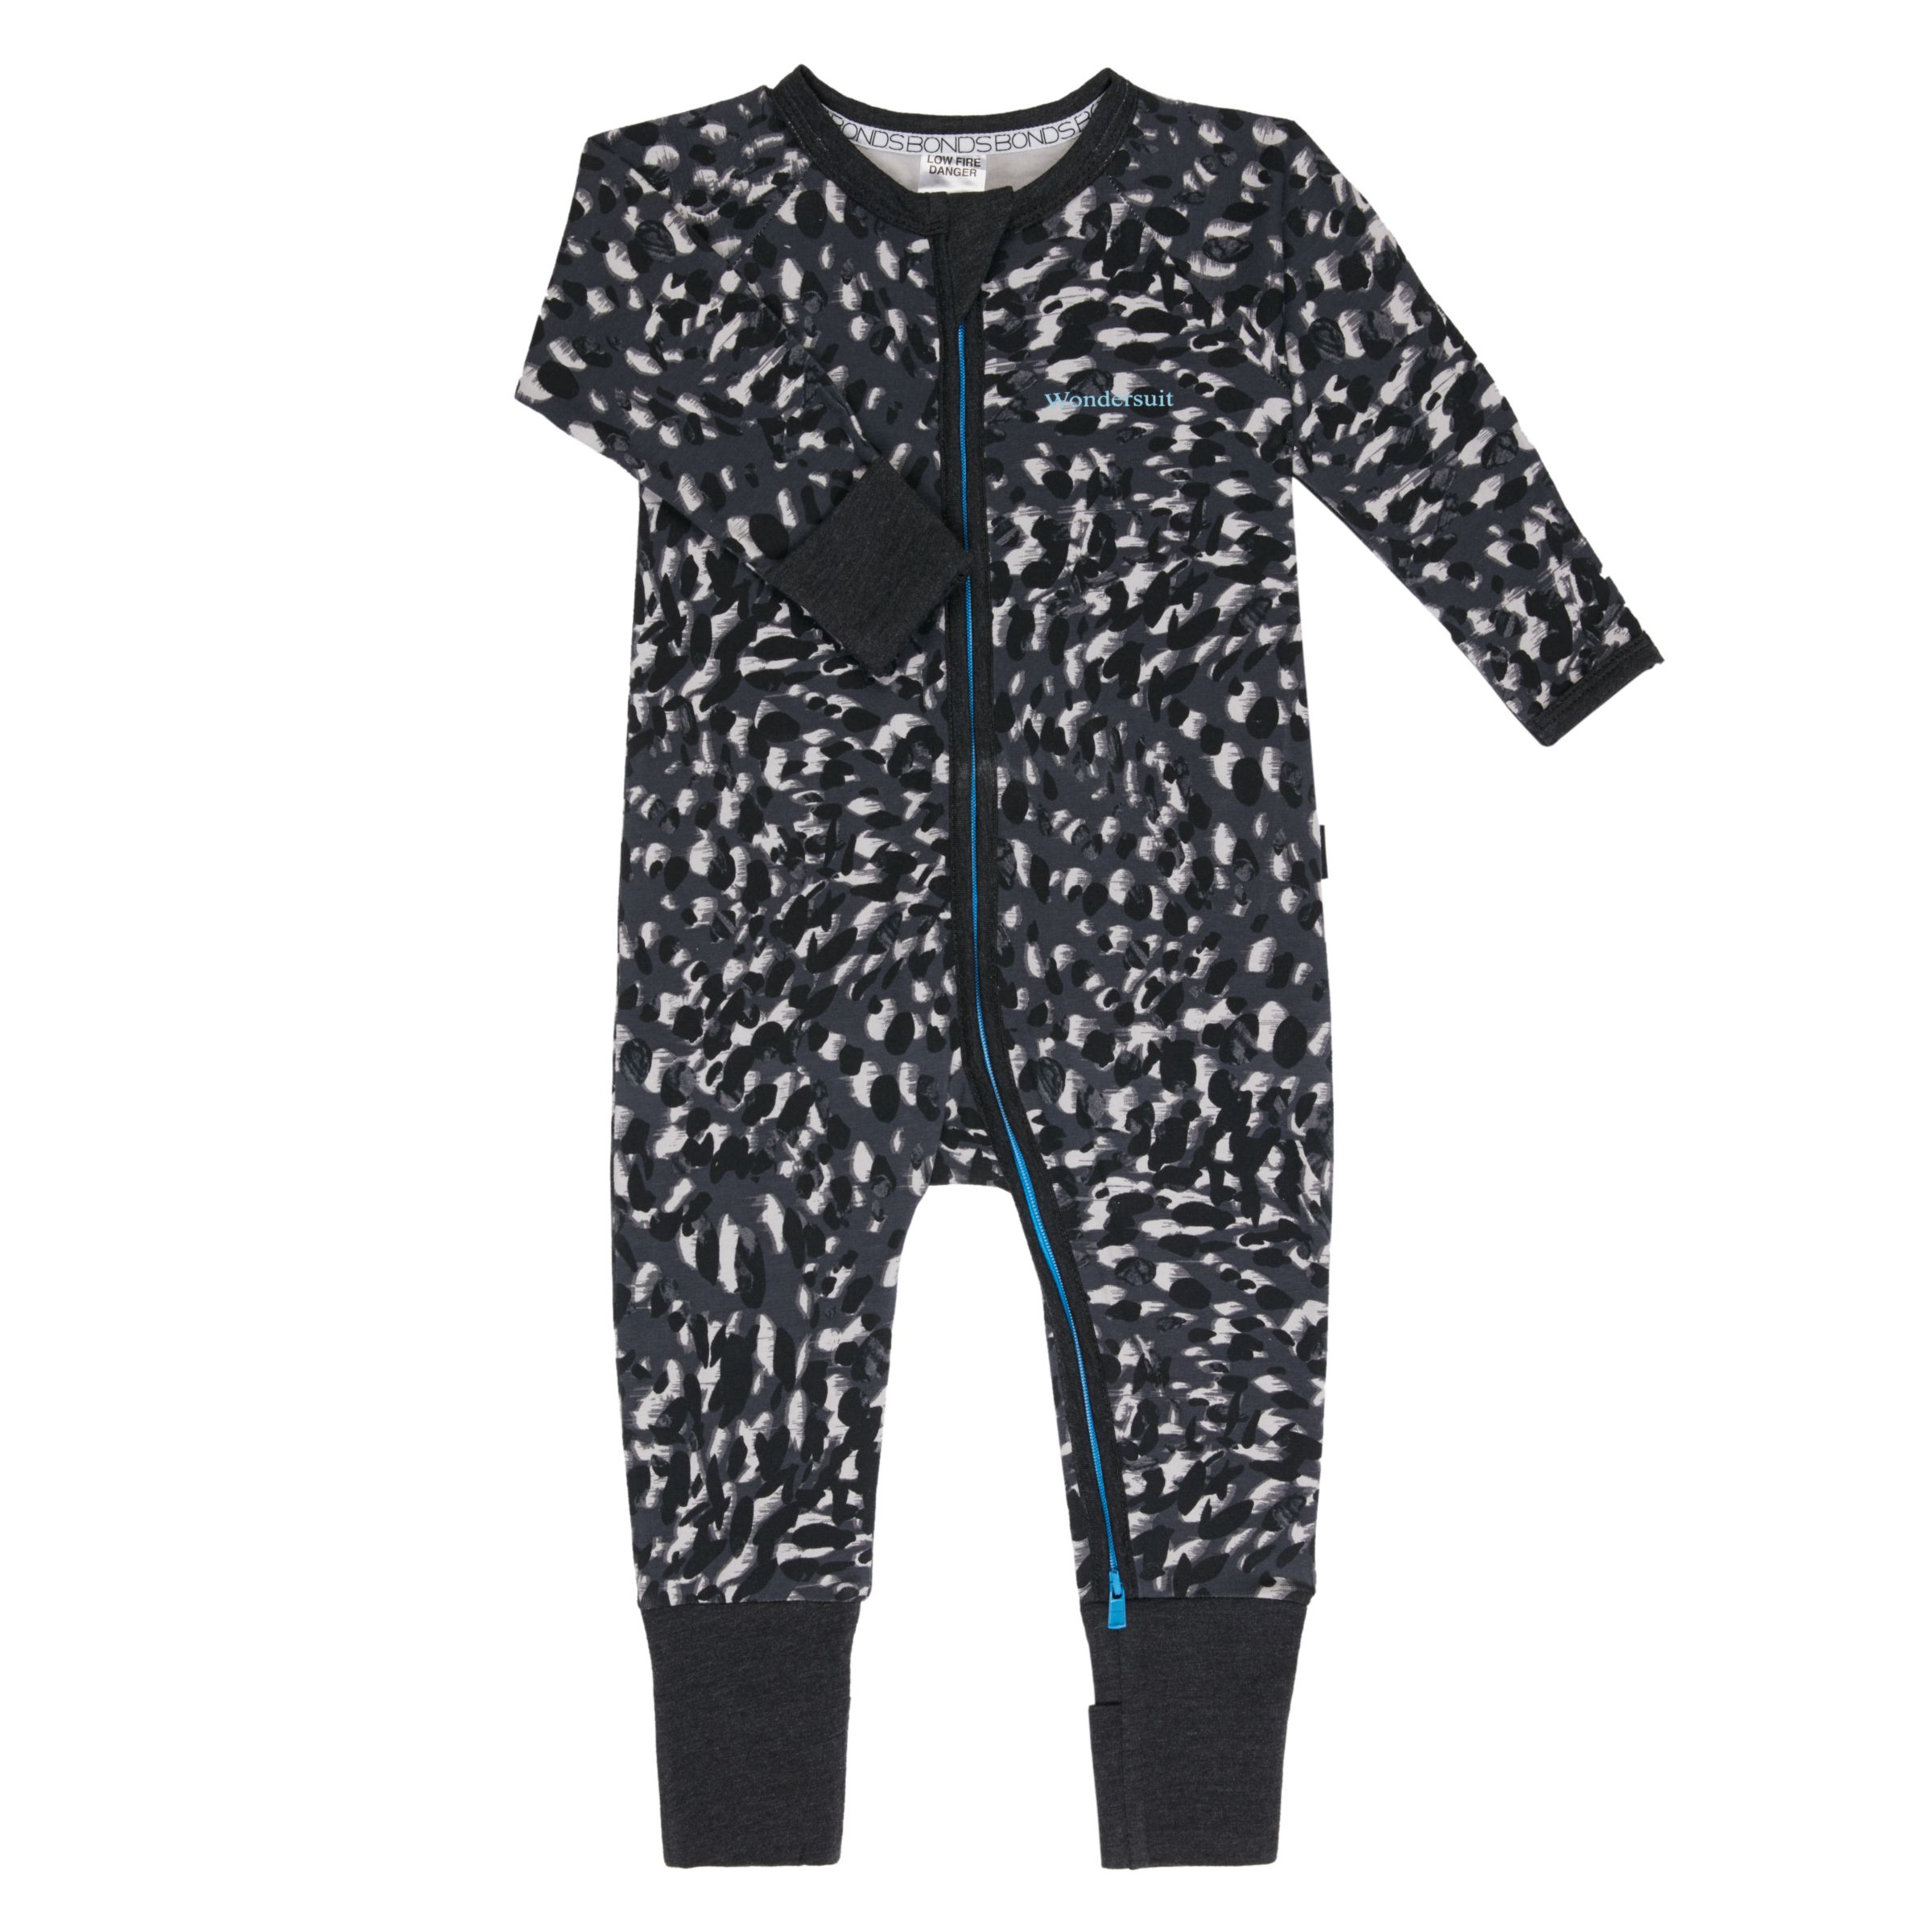 Bonds Baby Sketch Leopard Print Zip Wondersuit Sleepsuit, Black/White